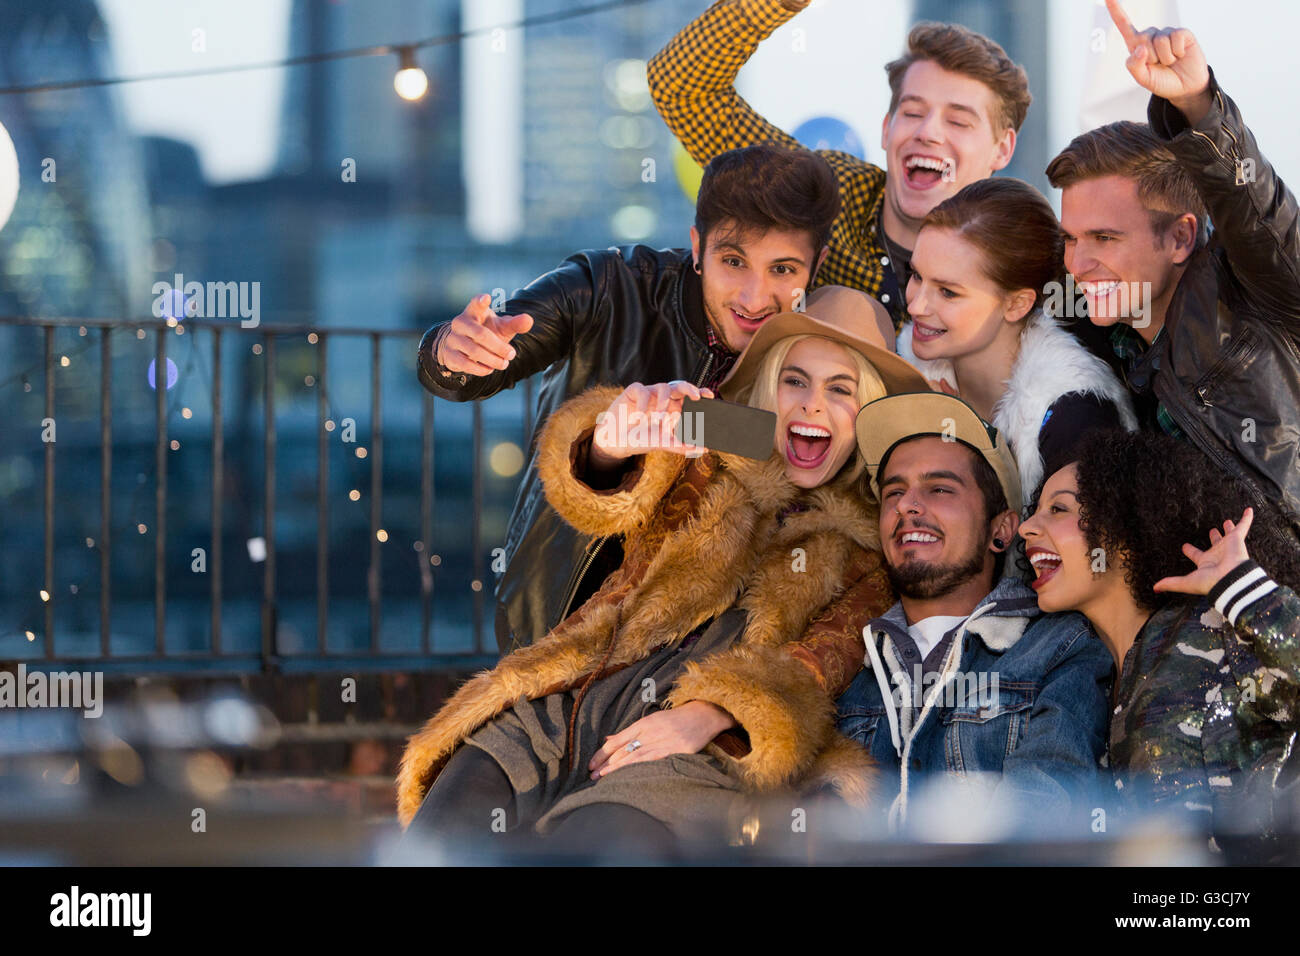 Jeunes adultes enthousiastes friends at rooftop party selfies Banque D'Images